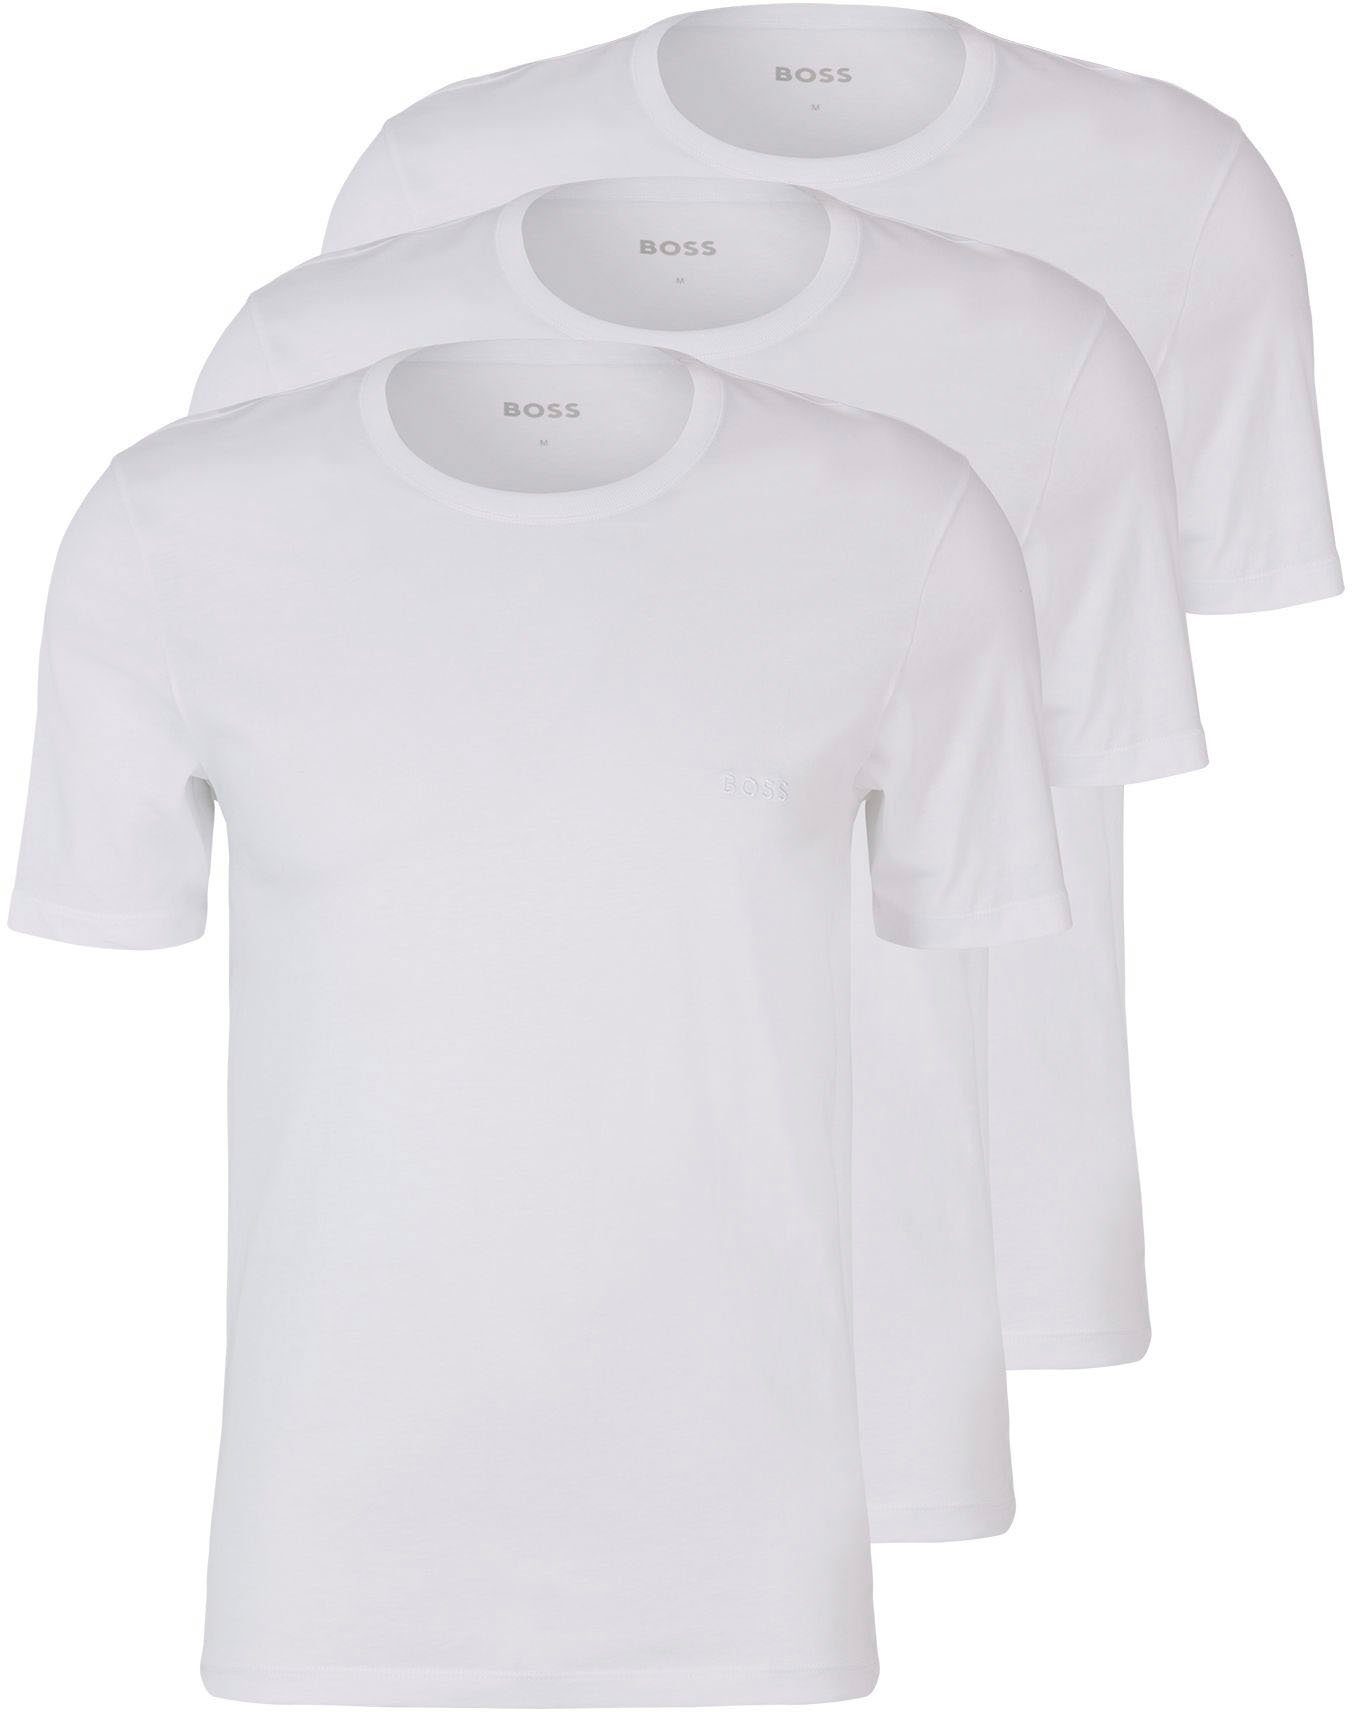 BOSS T-Shirt T-Shirt Rundhals (3er-Pack) mit dezentem BOSS Logo-Print white100